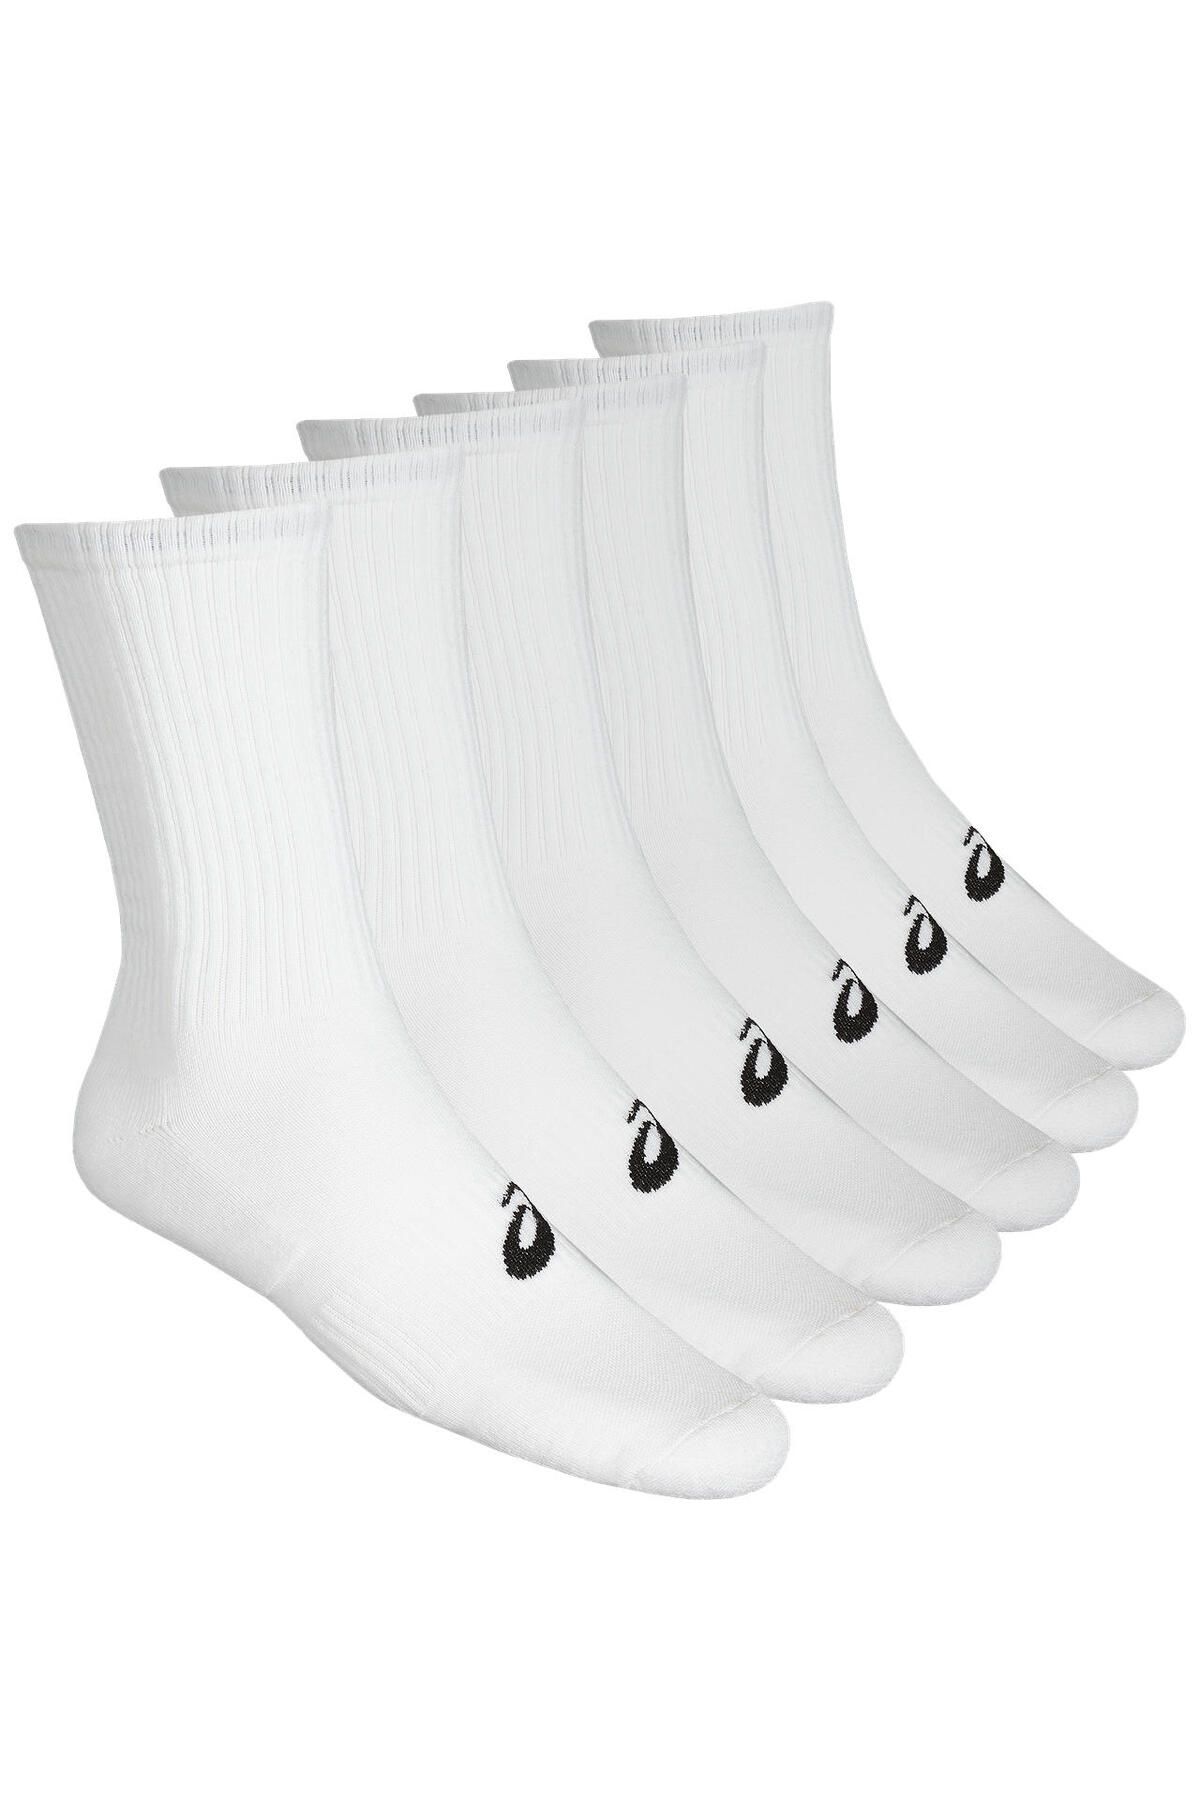 Asics 6ppk Crew Sock Unisex Beyaz Çorap 141802-0001